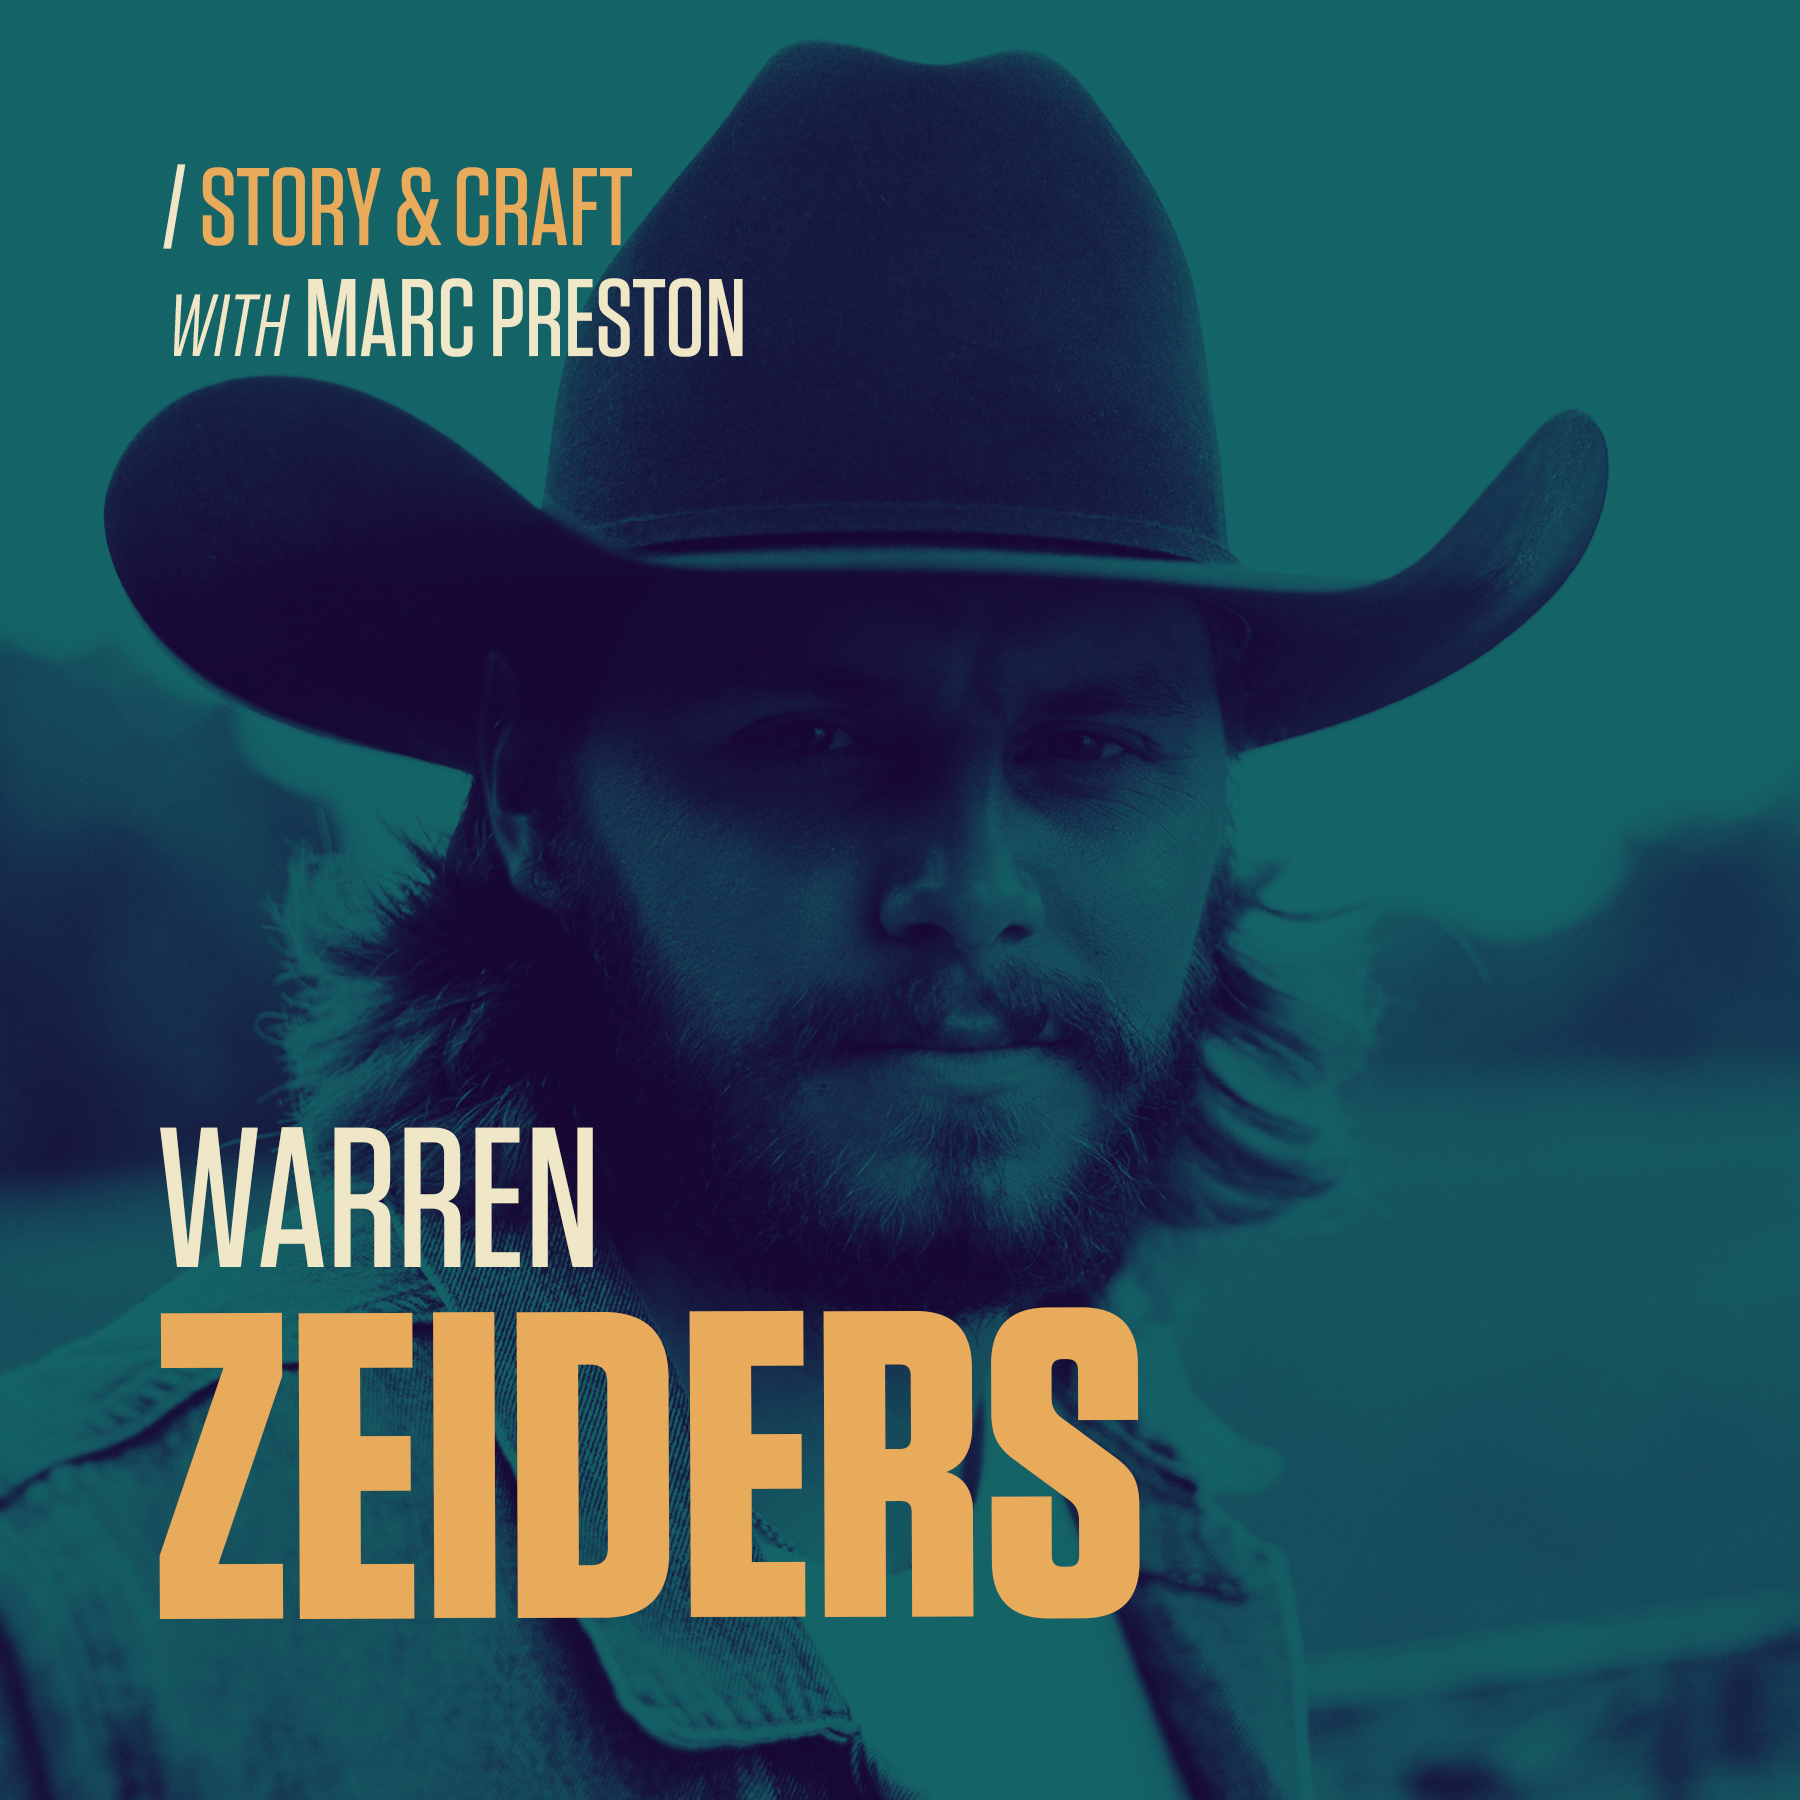 Warren Zeiders | Happy But Not Satisfied